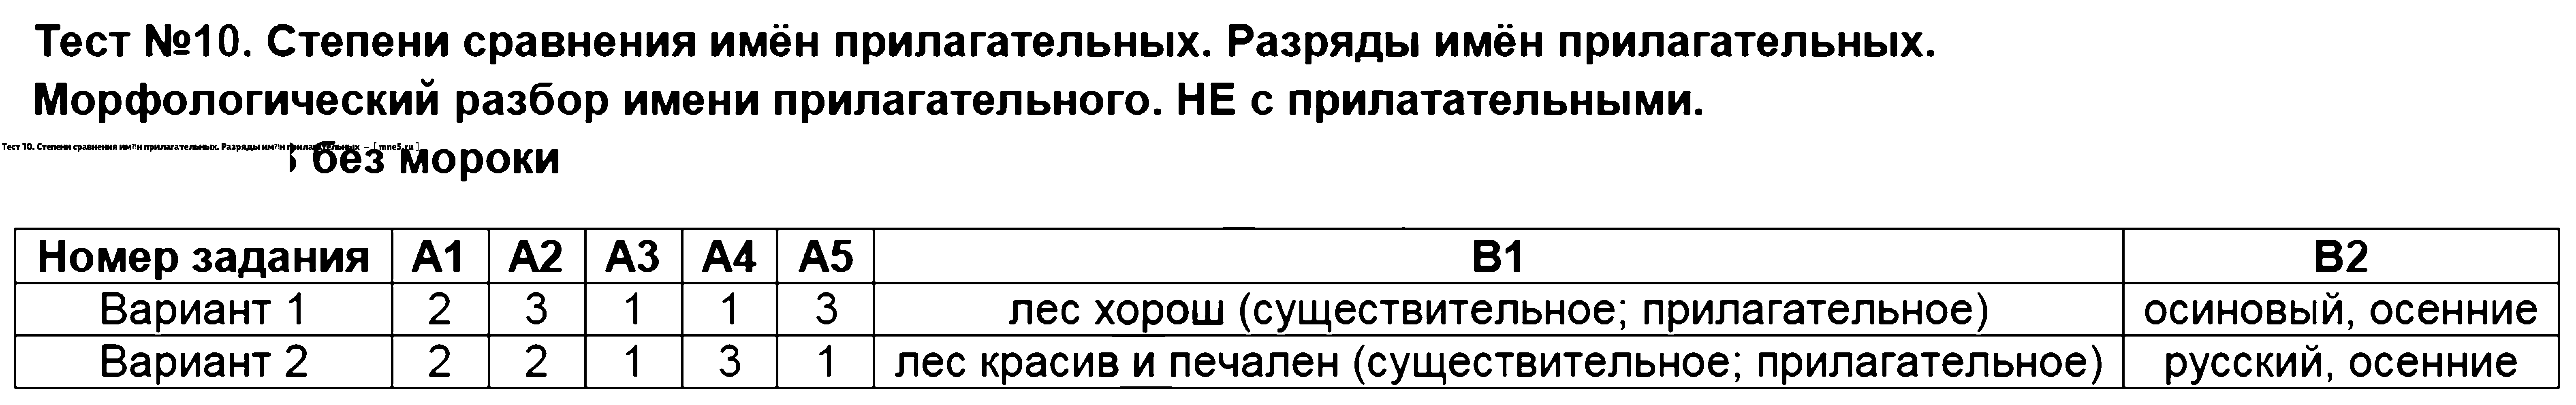 ГДЗ Русский язык 6 класс - Тест 10. Степени сравнения имён прилагательных. Разряды имён прилагательных